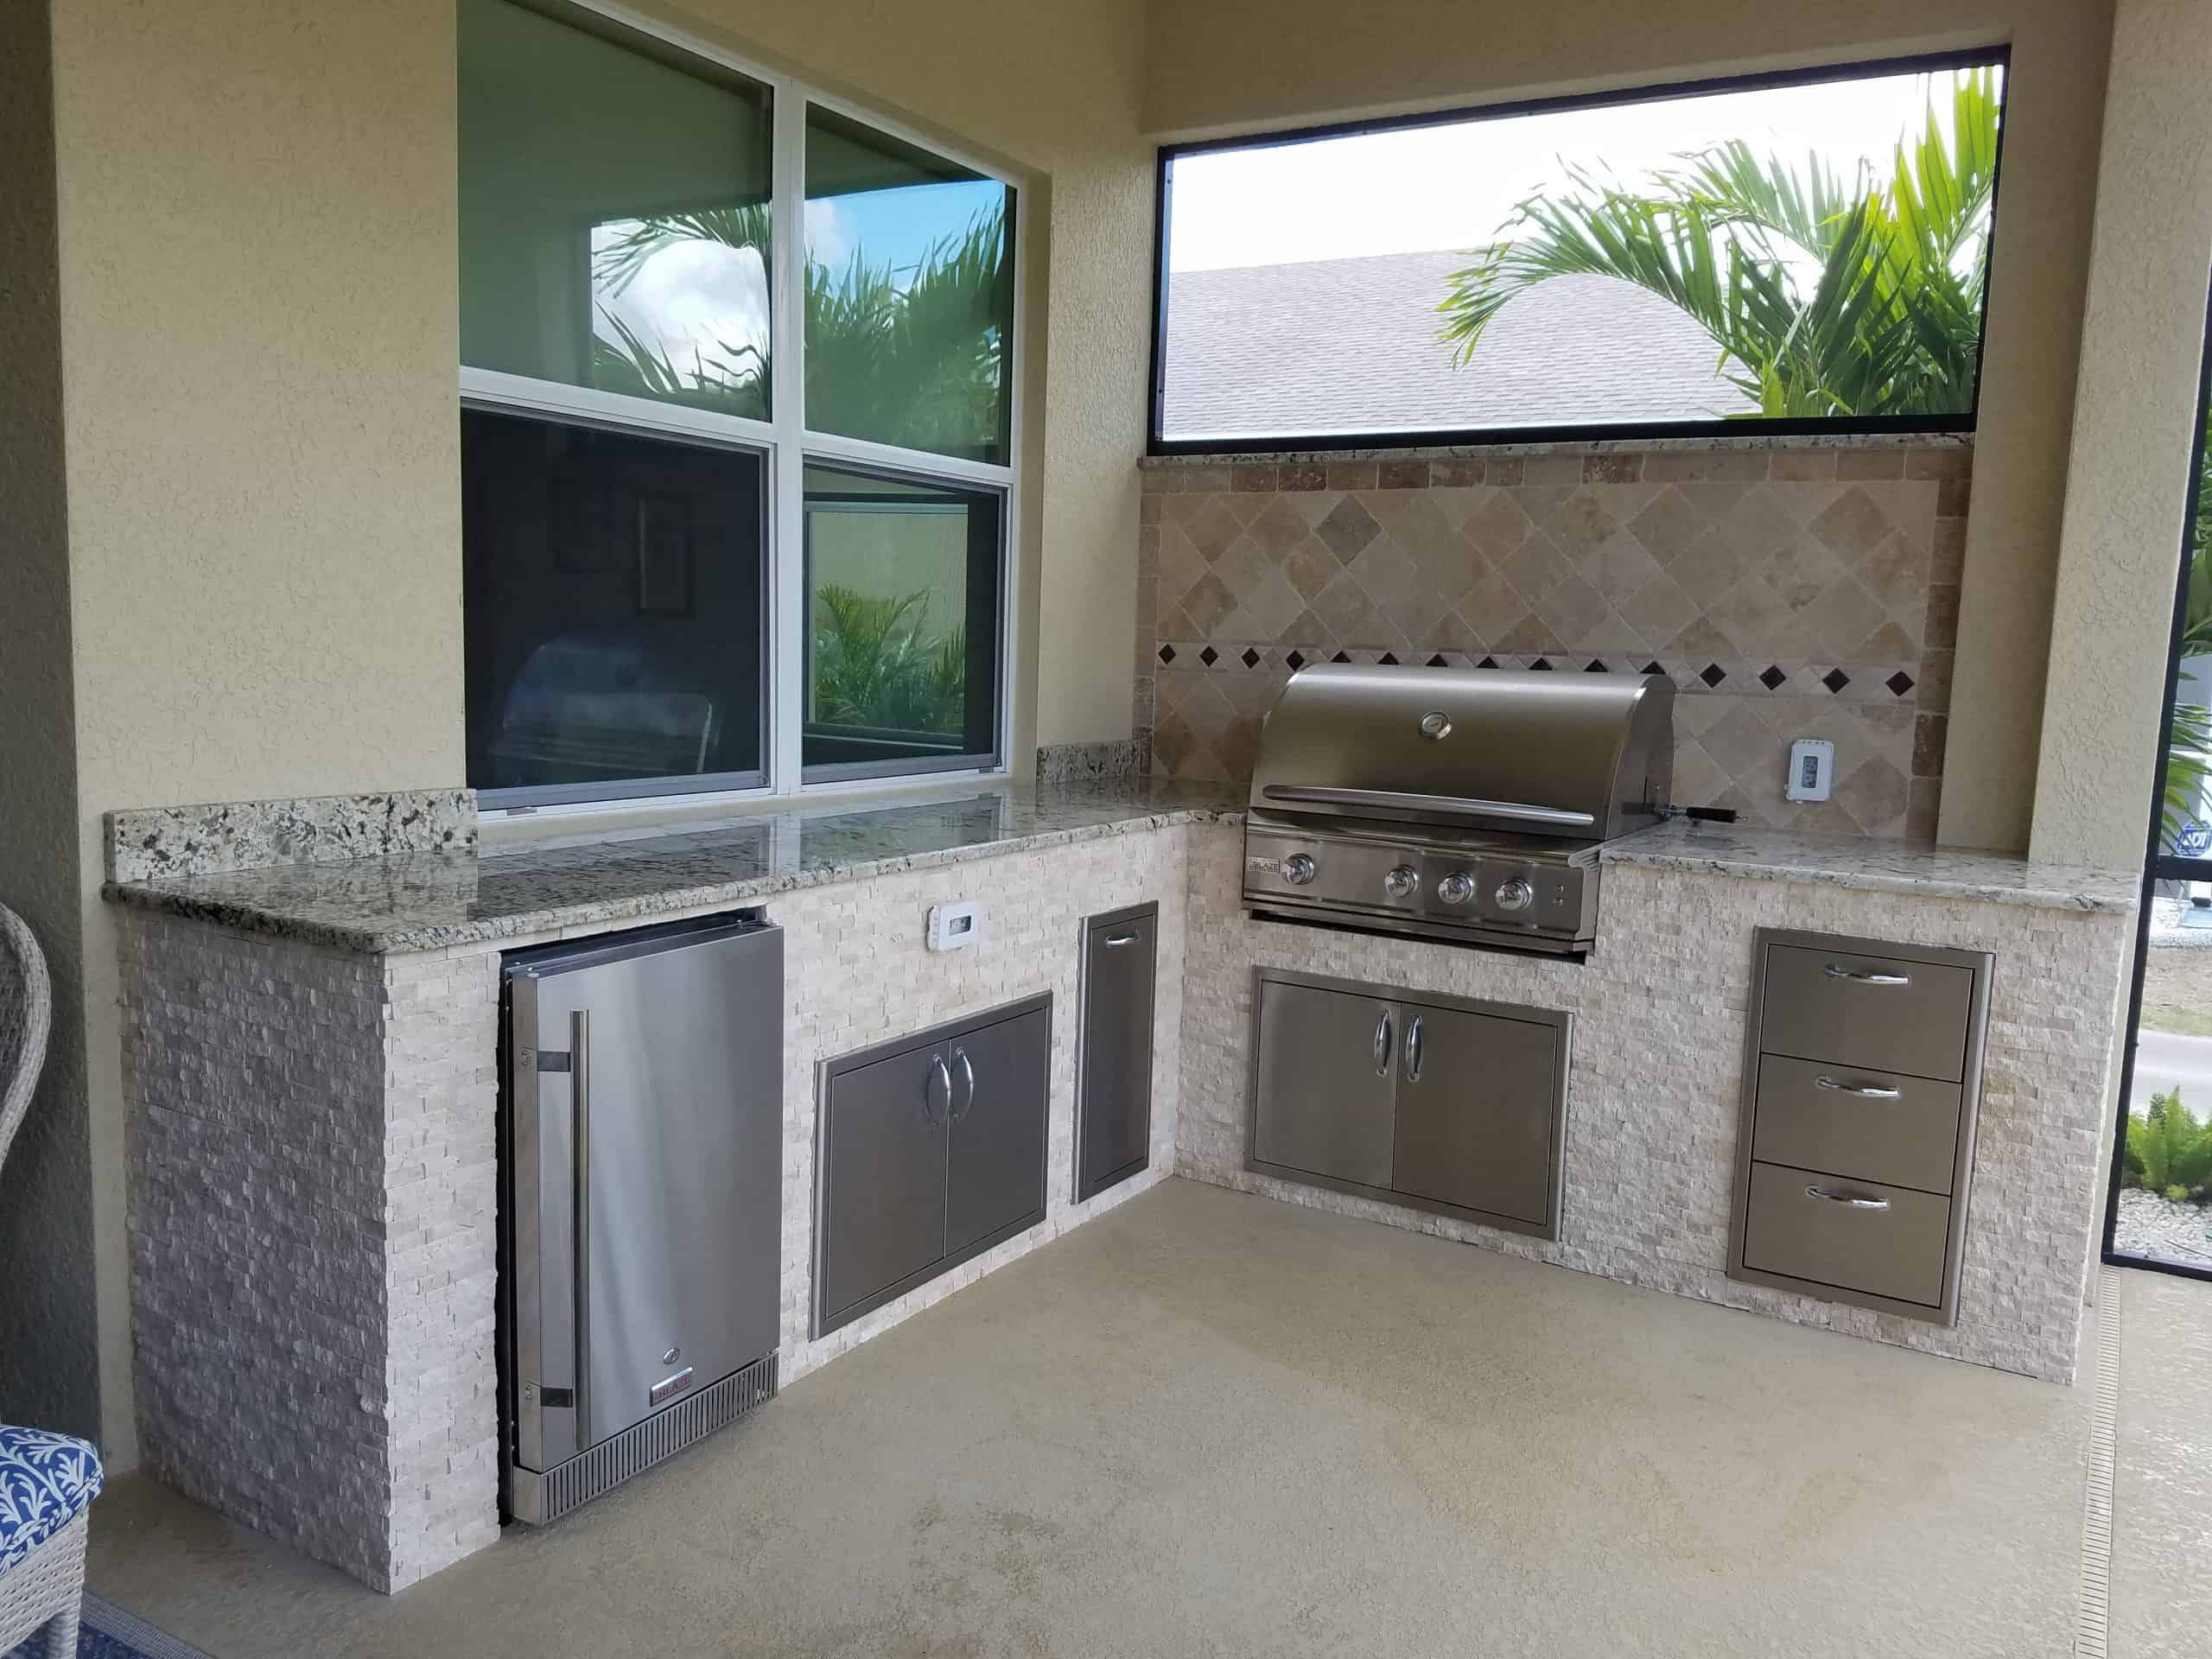 Innovative Outdoor Kitchens and Living - Fernandina Beach, FL - (904